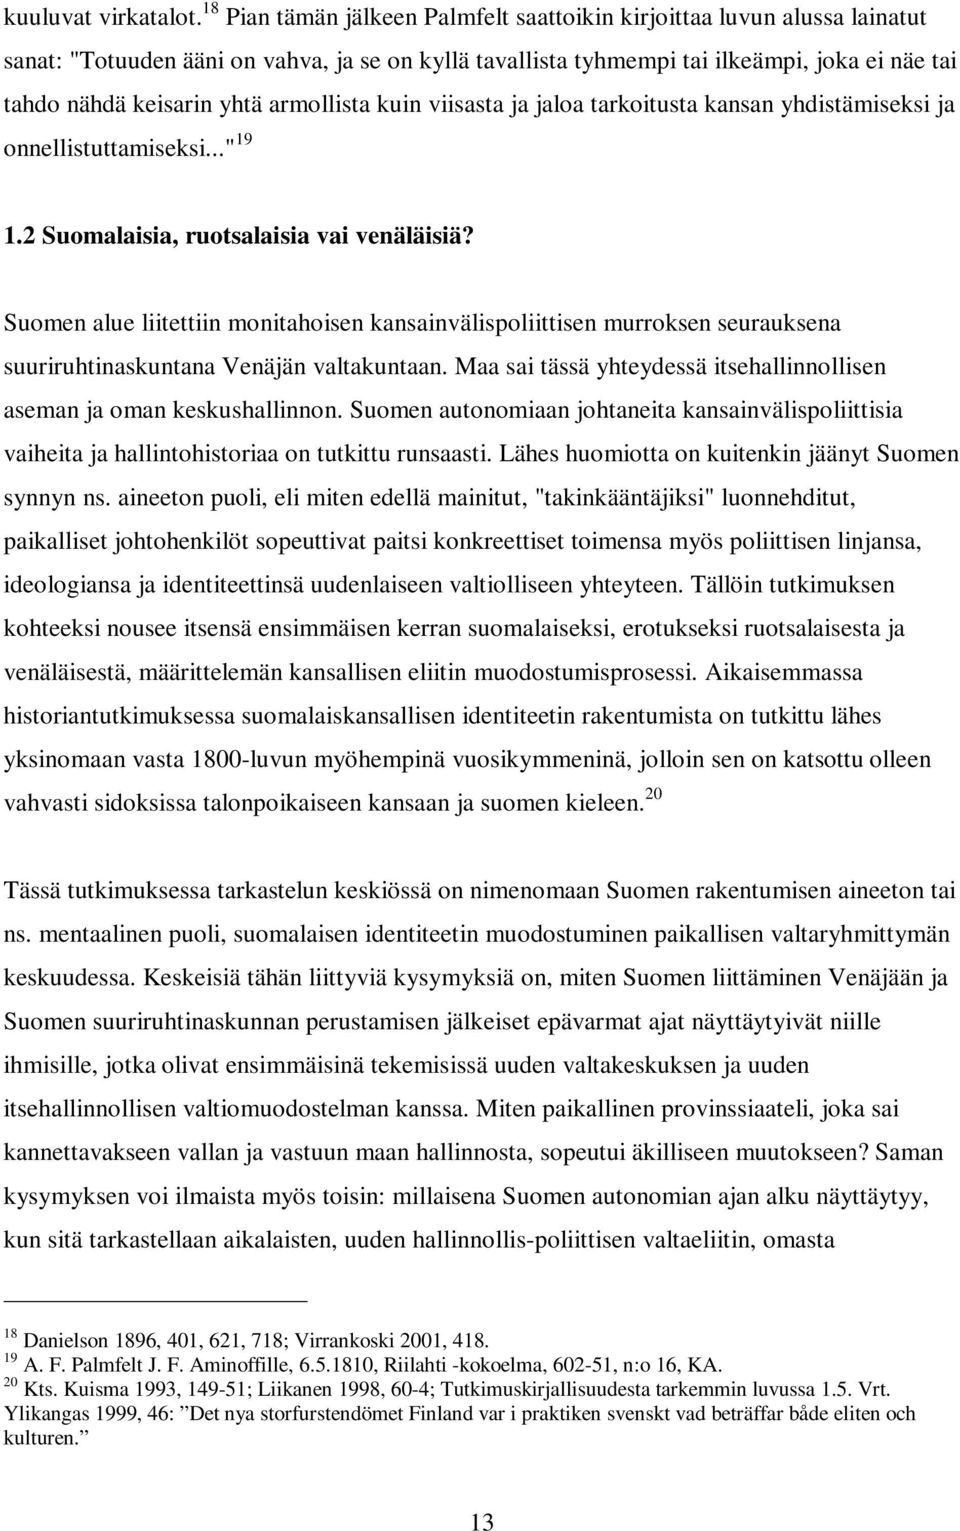 armollista kuin viisasta ja jaloa tarkoitusta kansan yhdistämiseksi ja onnellistuttamiseksi..." 19 1.2 Suomalaisia, ruotsalaisia vai venäläisiä?